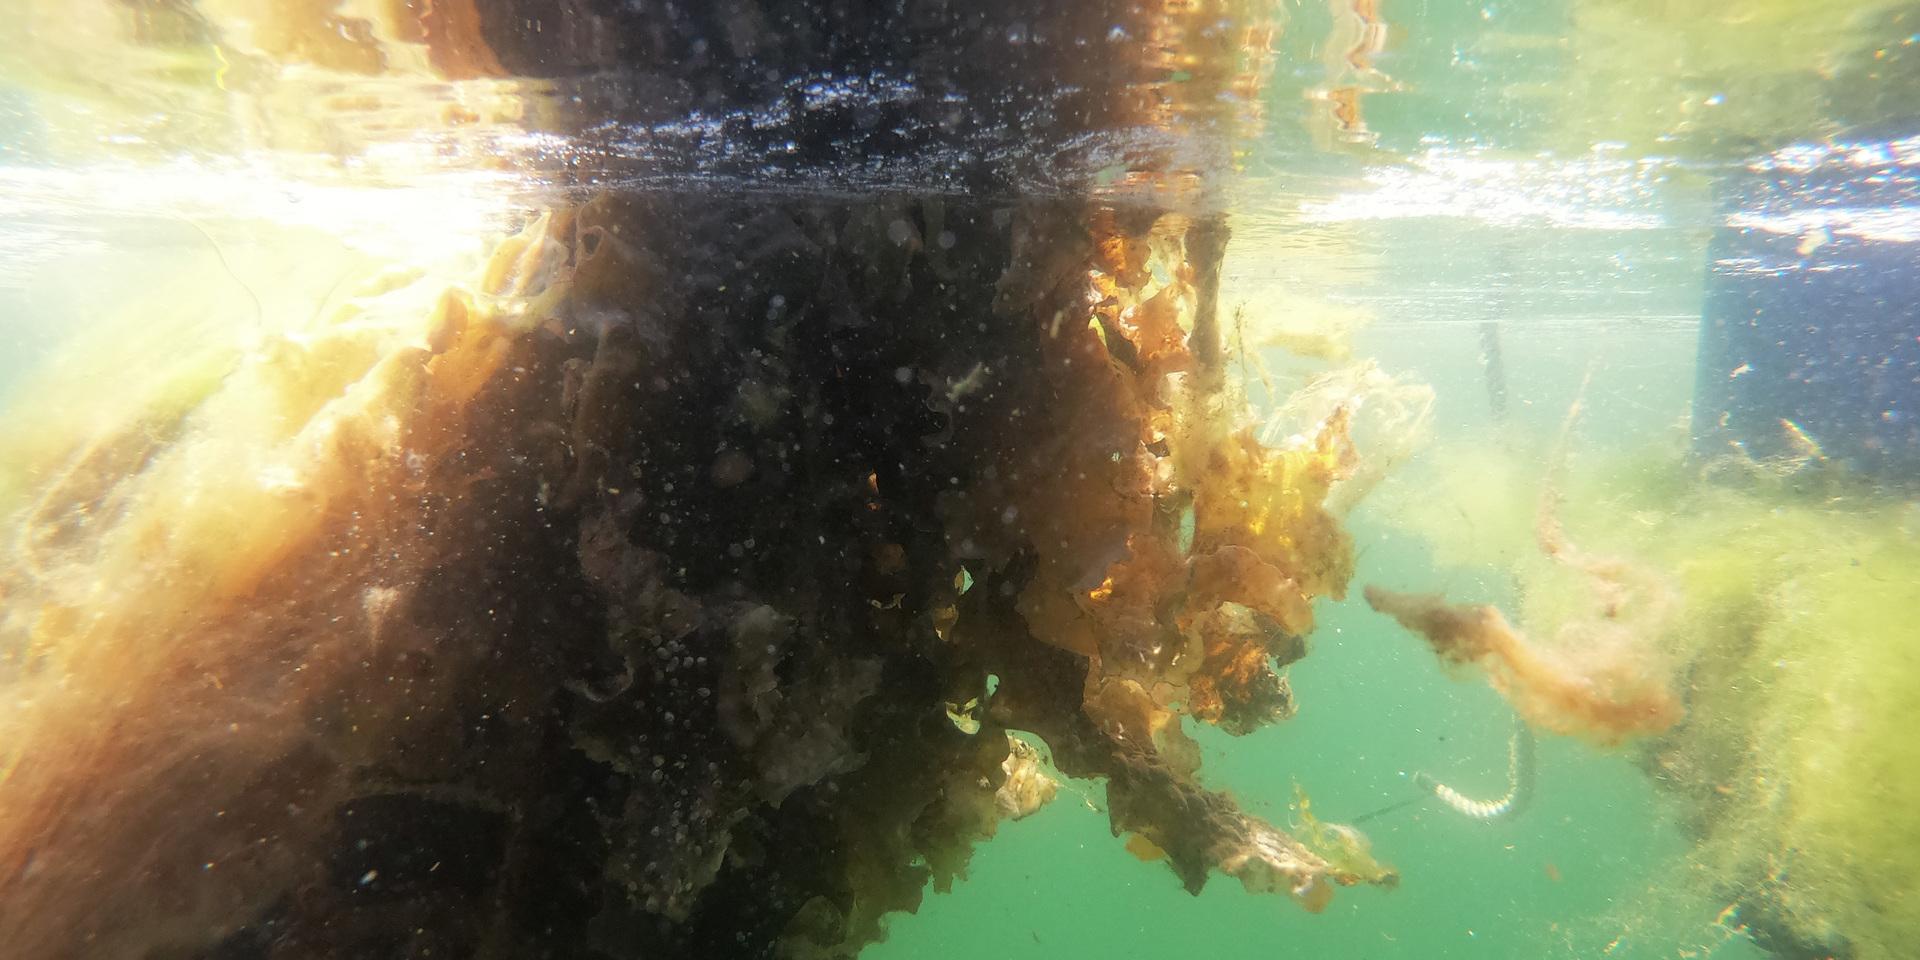 Så kan en tångodling se ut. Bilden är tagen från Sveriges första marina kolonilott på Tjärnö utanför Strömstad. Där odlas det olika sorters tång och alger.